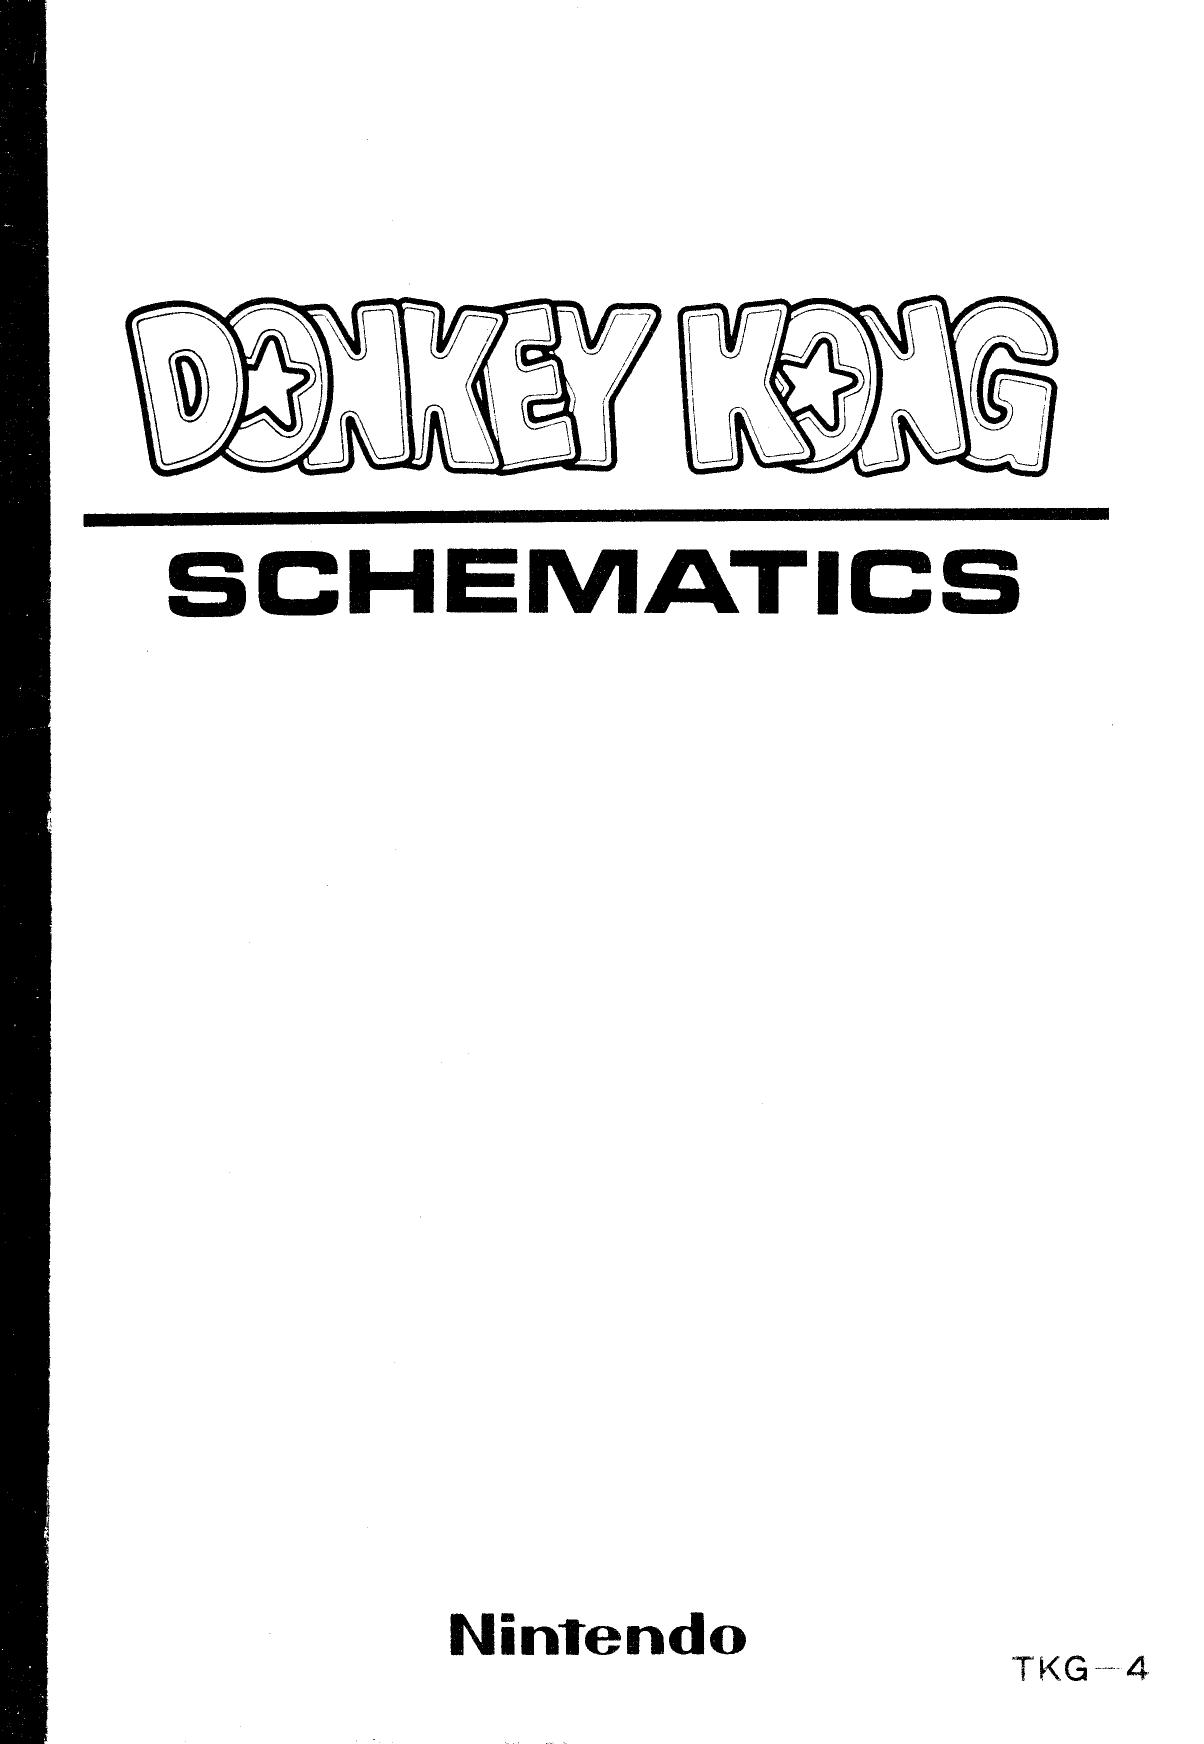 Donkey Kong TKG-4 Schematics